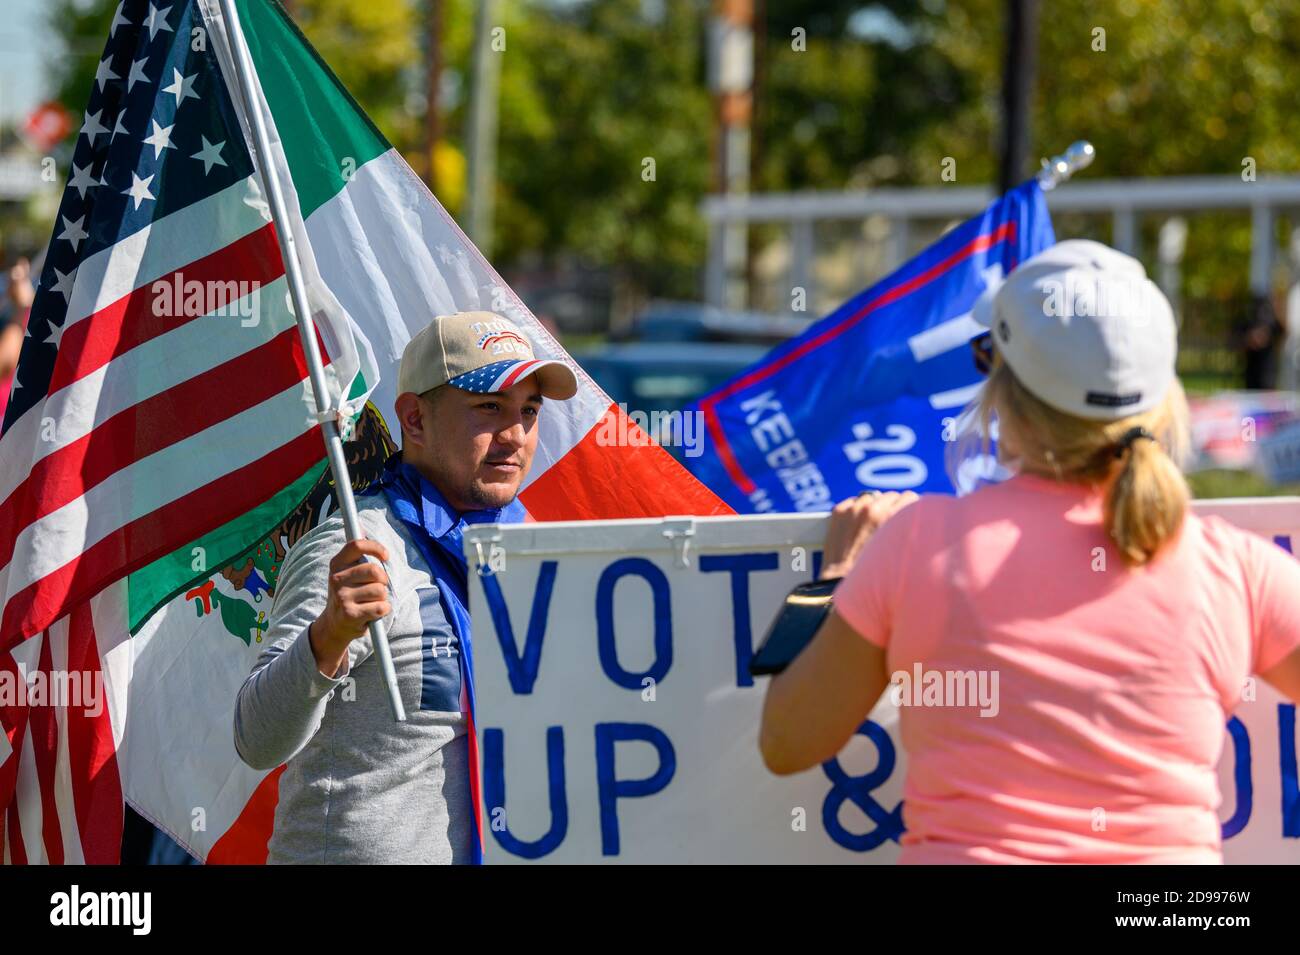 Houston, Texas, Stati Uniti. 3 Nov 2020. Un sostenitore di Donald Trump affronta un volontario che tiene i cartelli anti-Trump al di fuori del seggio elettorale nella contea di Harris, Houston, Texas, USA. Credit: Michelmond/Alamy Live News. Foto Stock